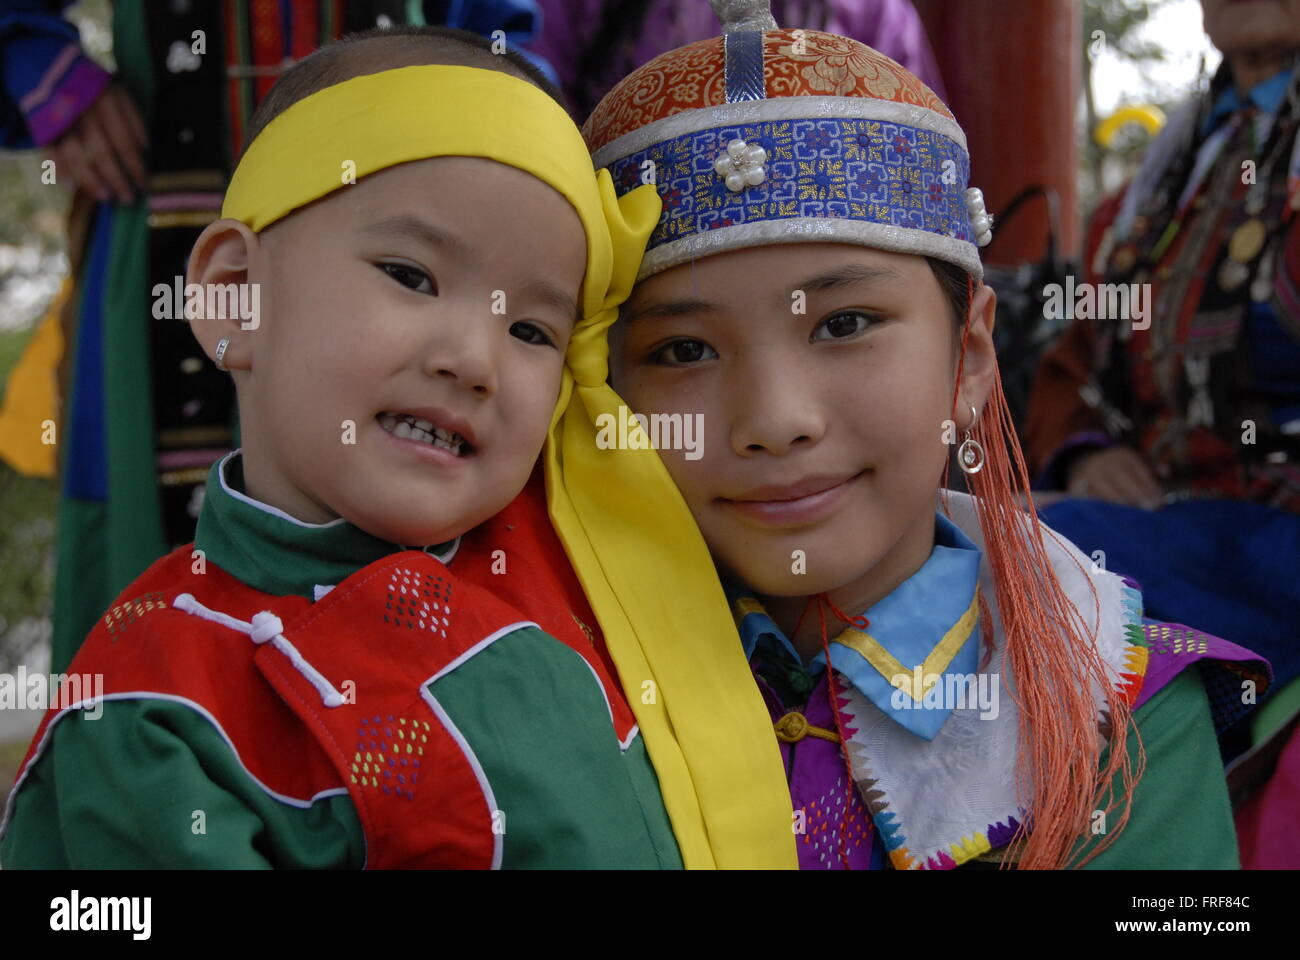 Mongolei - 13.07.2010 - Mongolei / Ulan-Bator / Ulan-Bator - Portrait der  mongolischen Kinder in ihrer traditionellen Kleidung Stockfotografie - Alamy